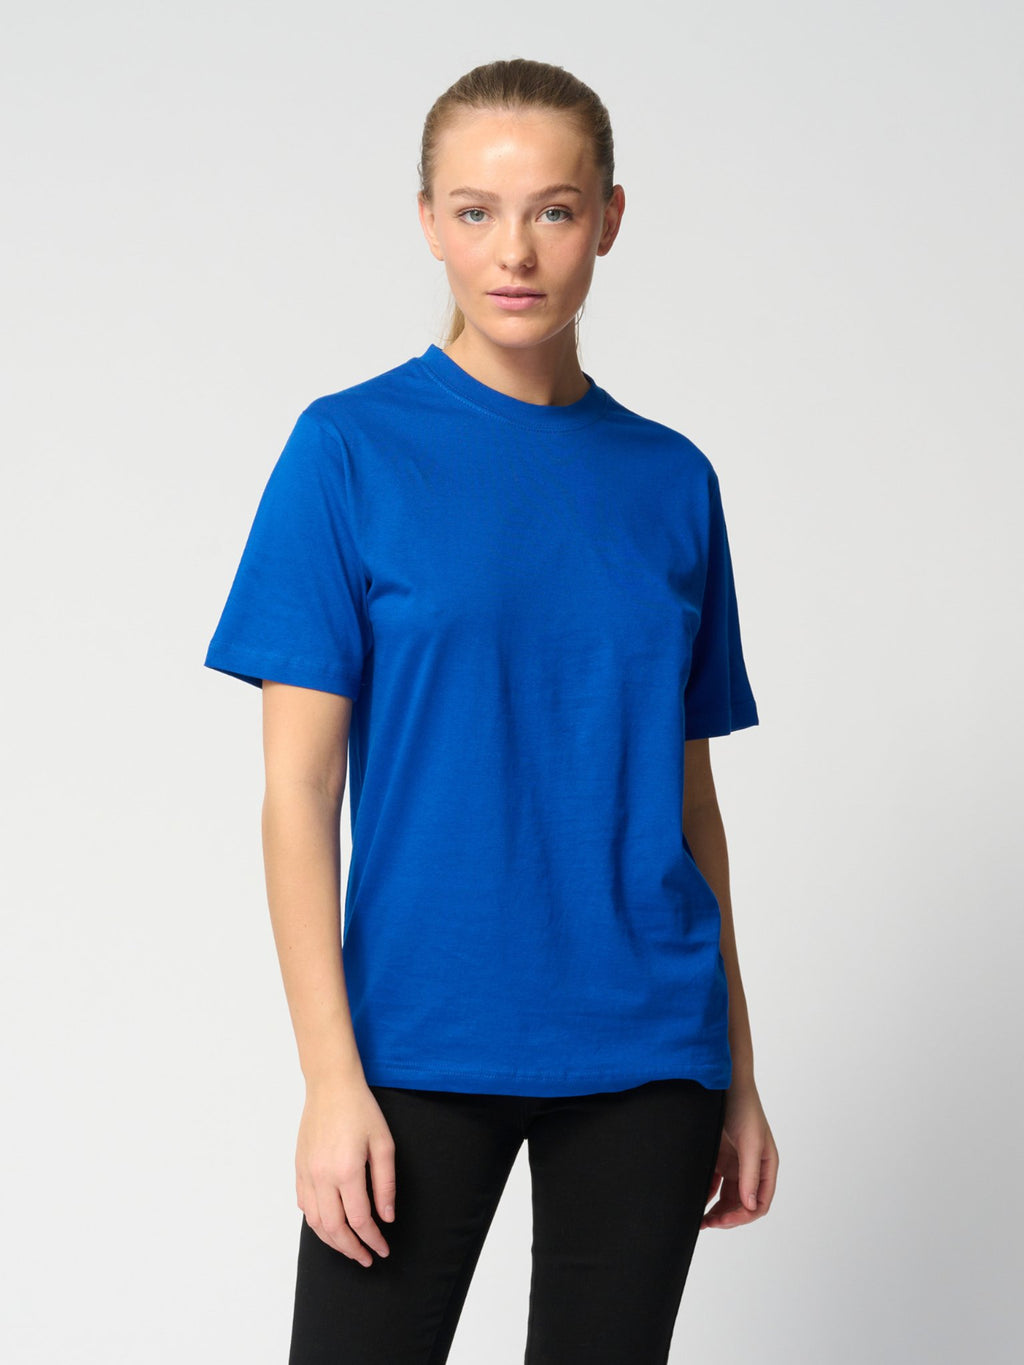 Υπερμεγέθη μπλουζάκι - μπλε